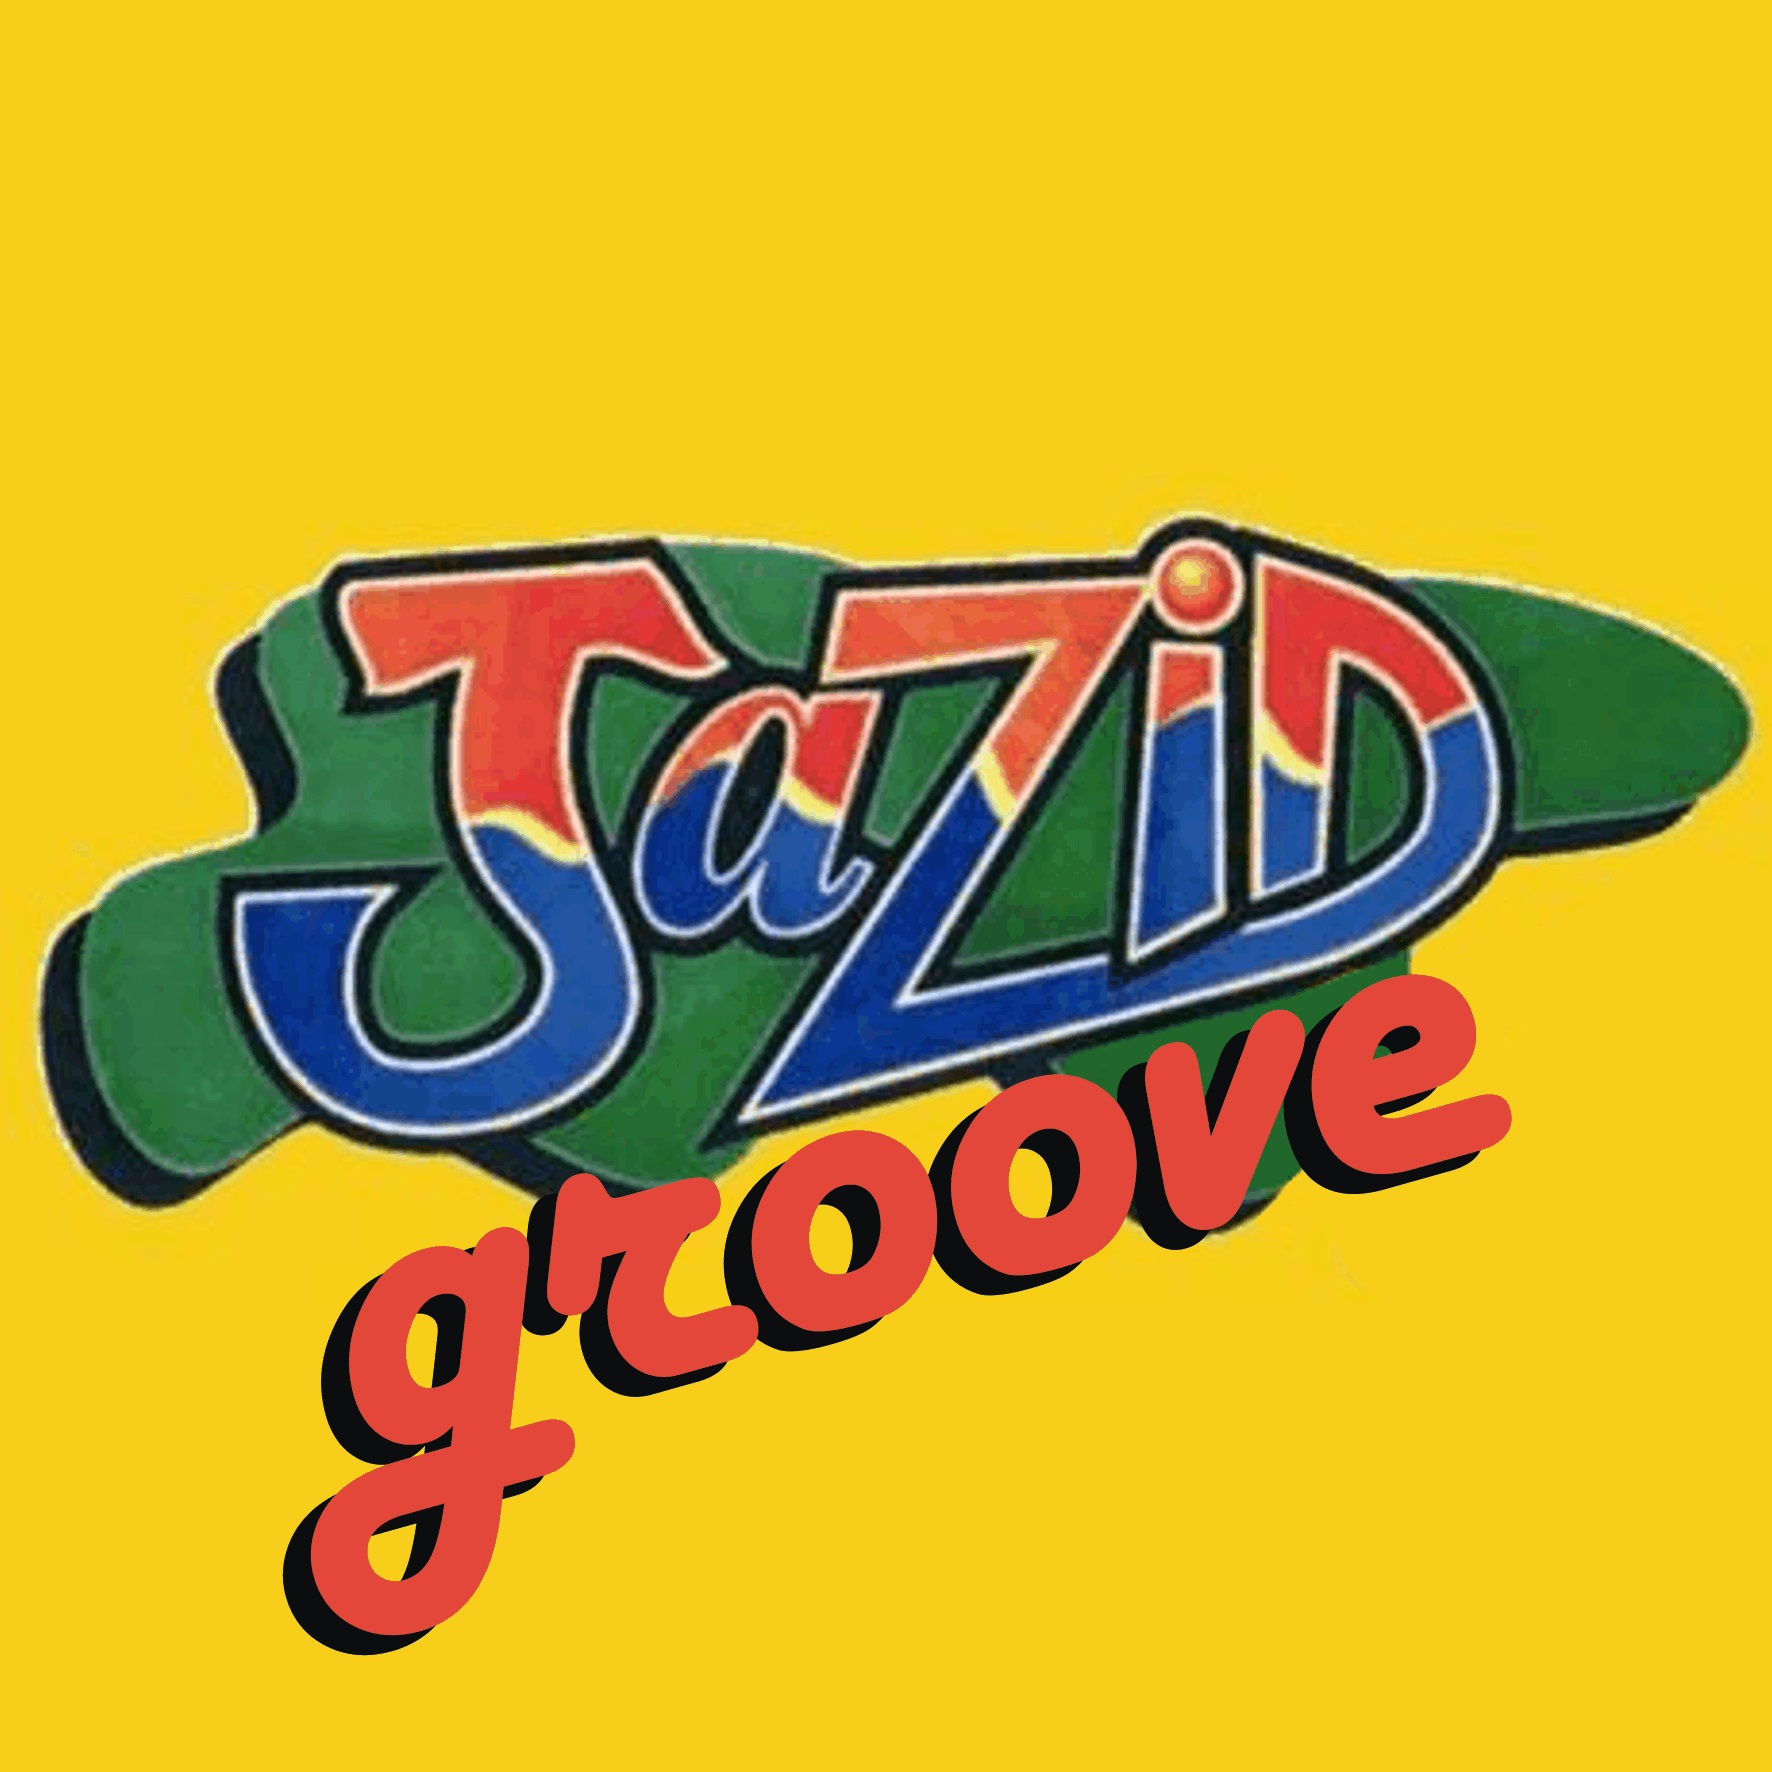 Jazid Groove 14